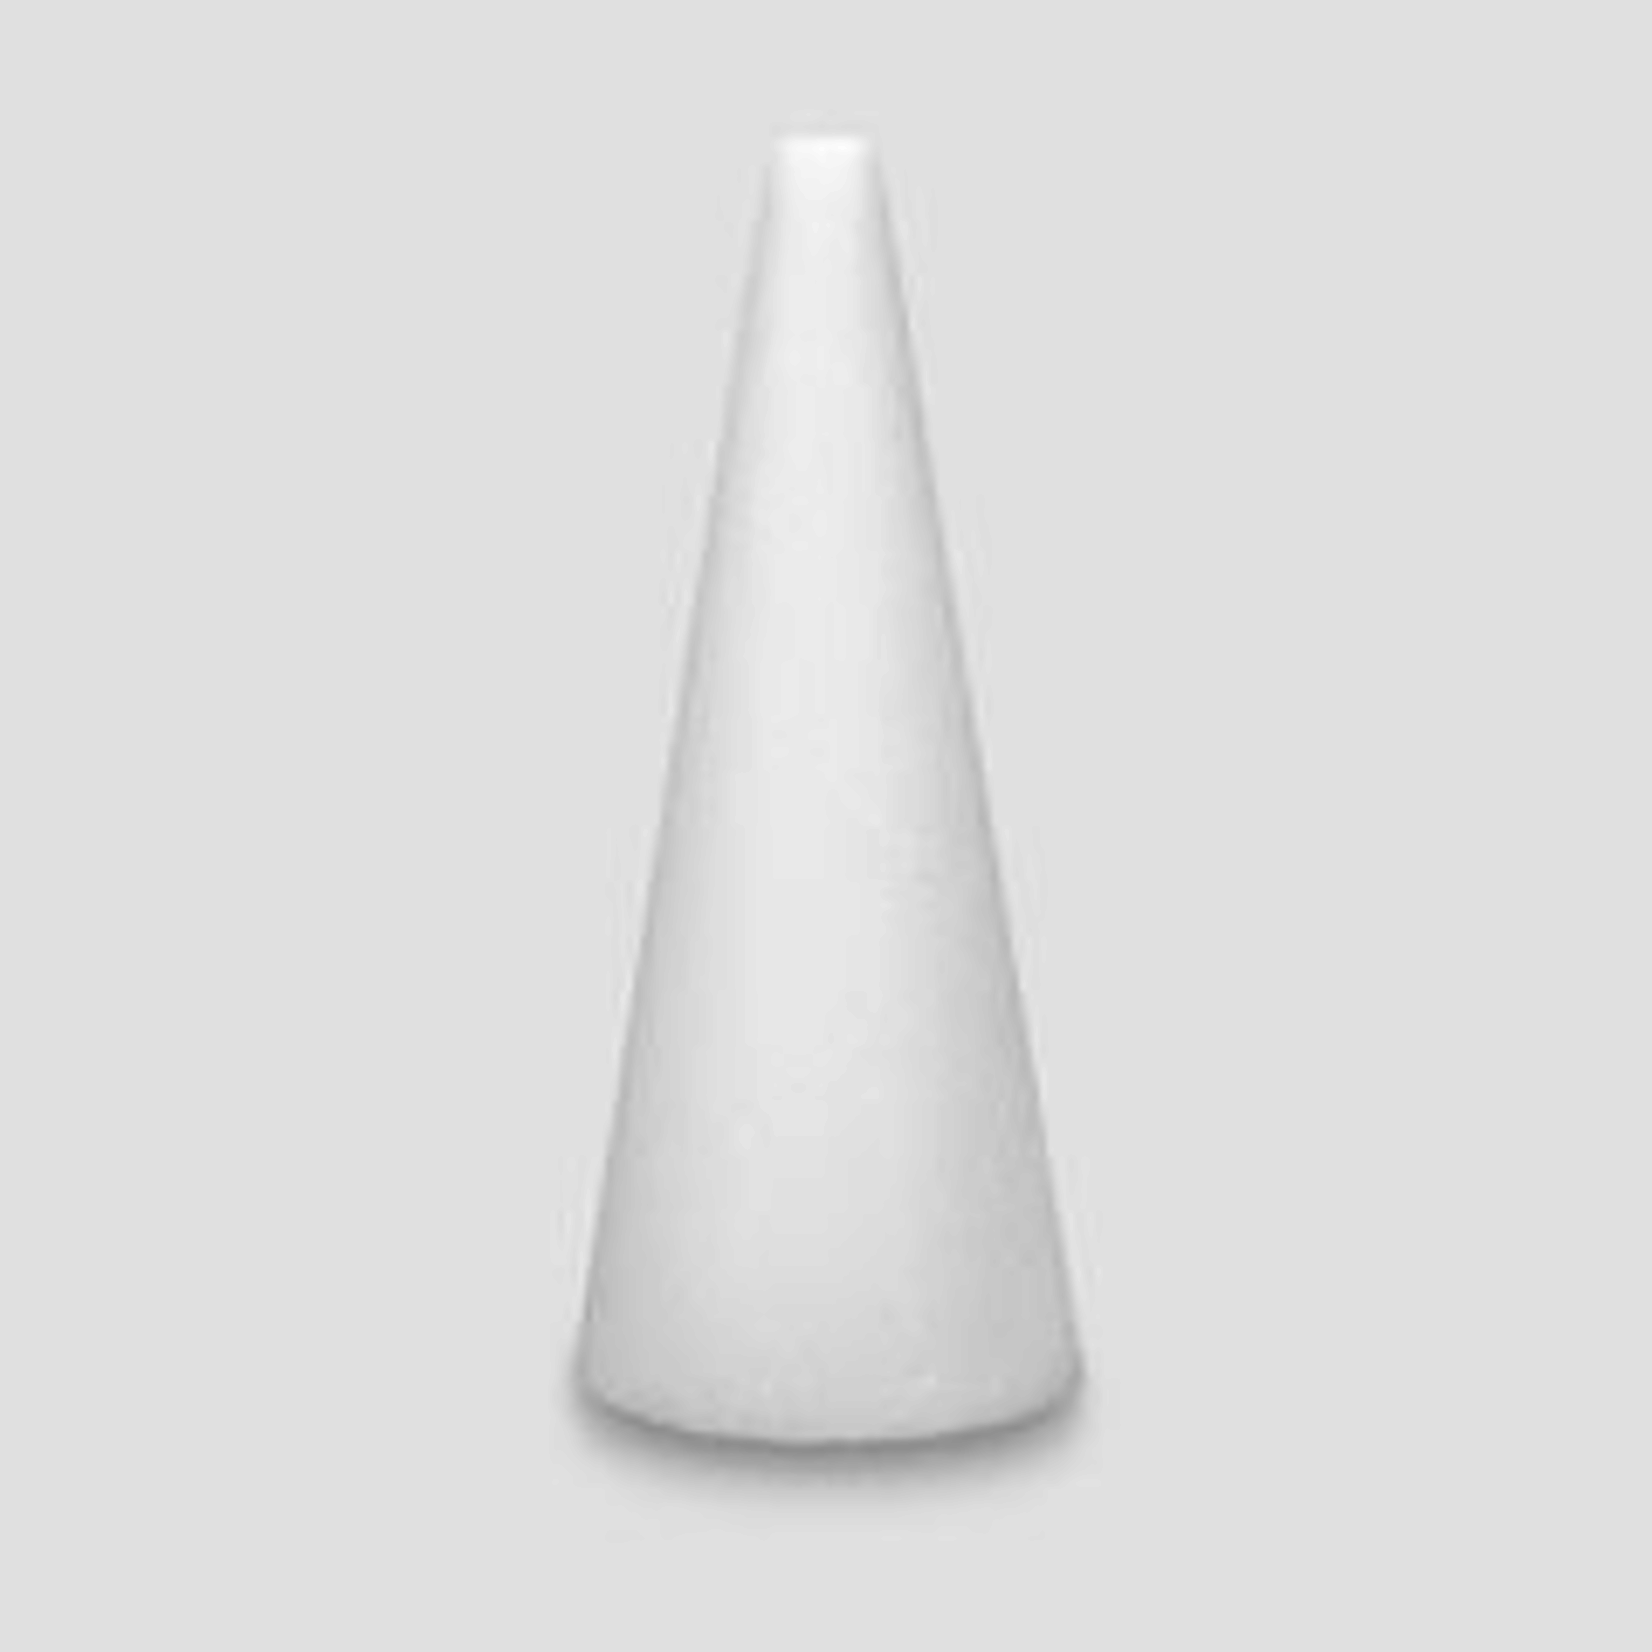 12x4""  White STYROFOAM Cone